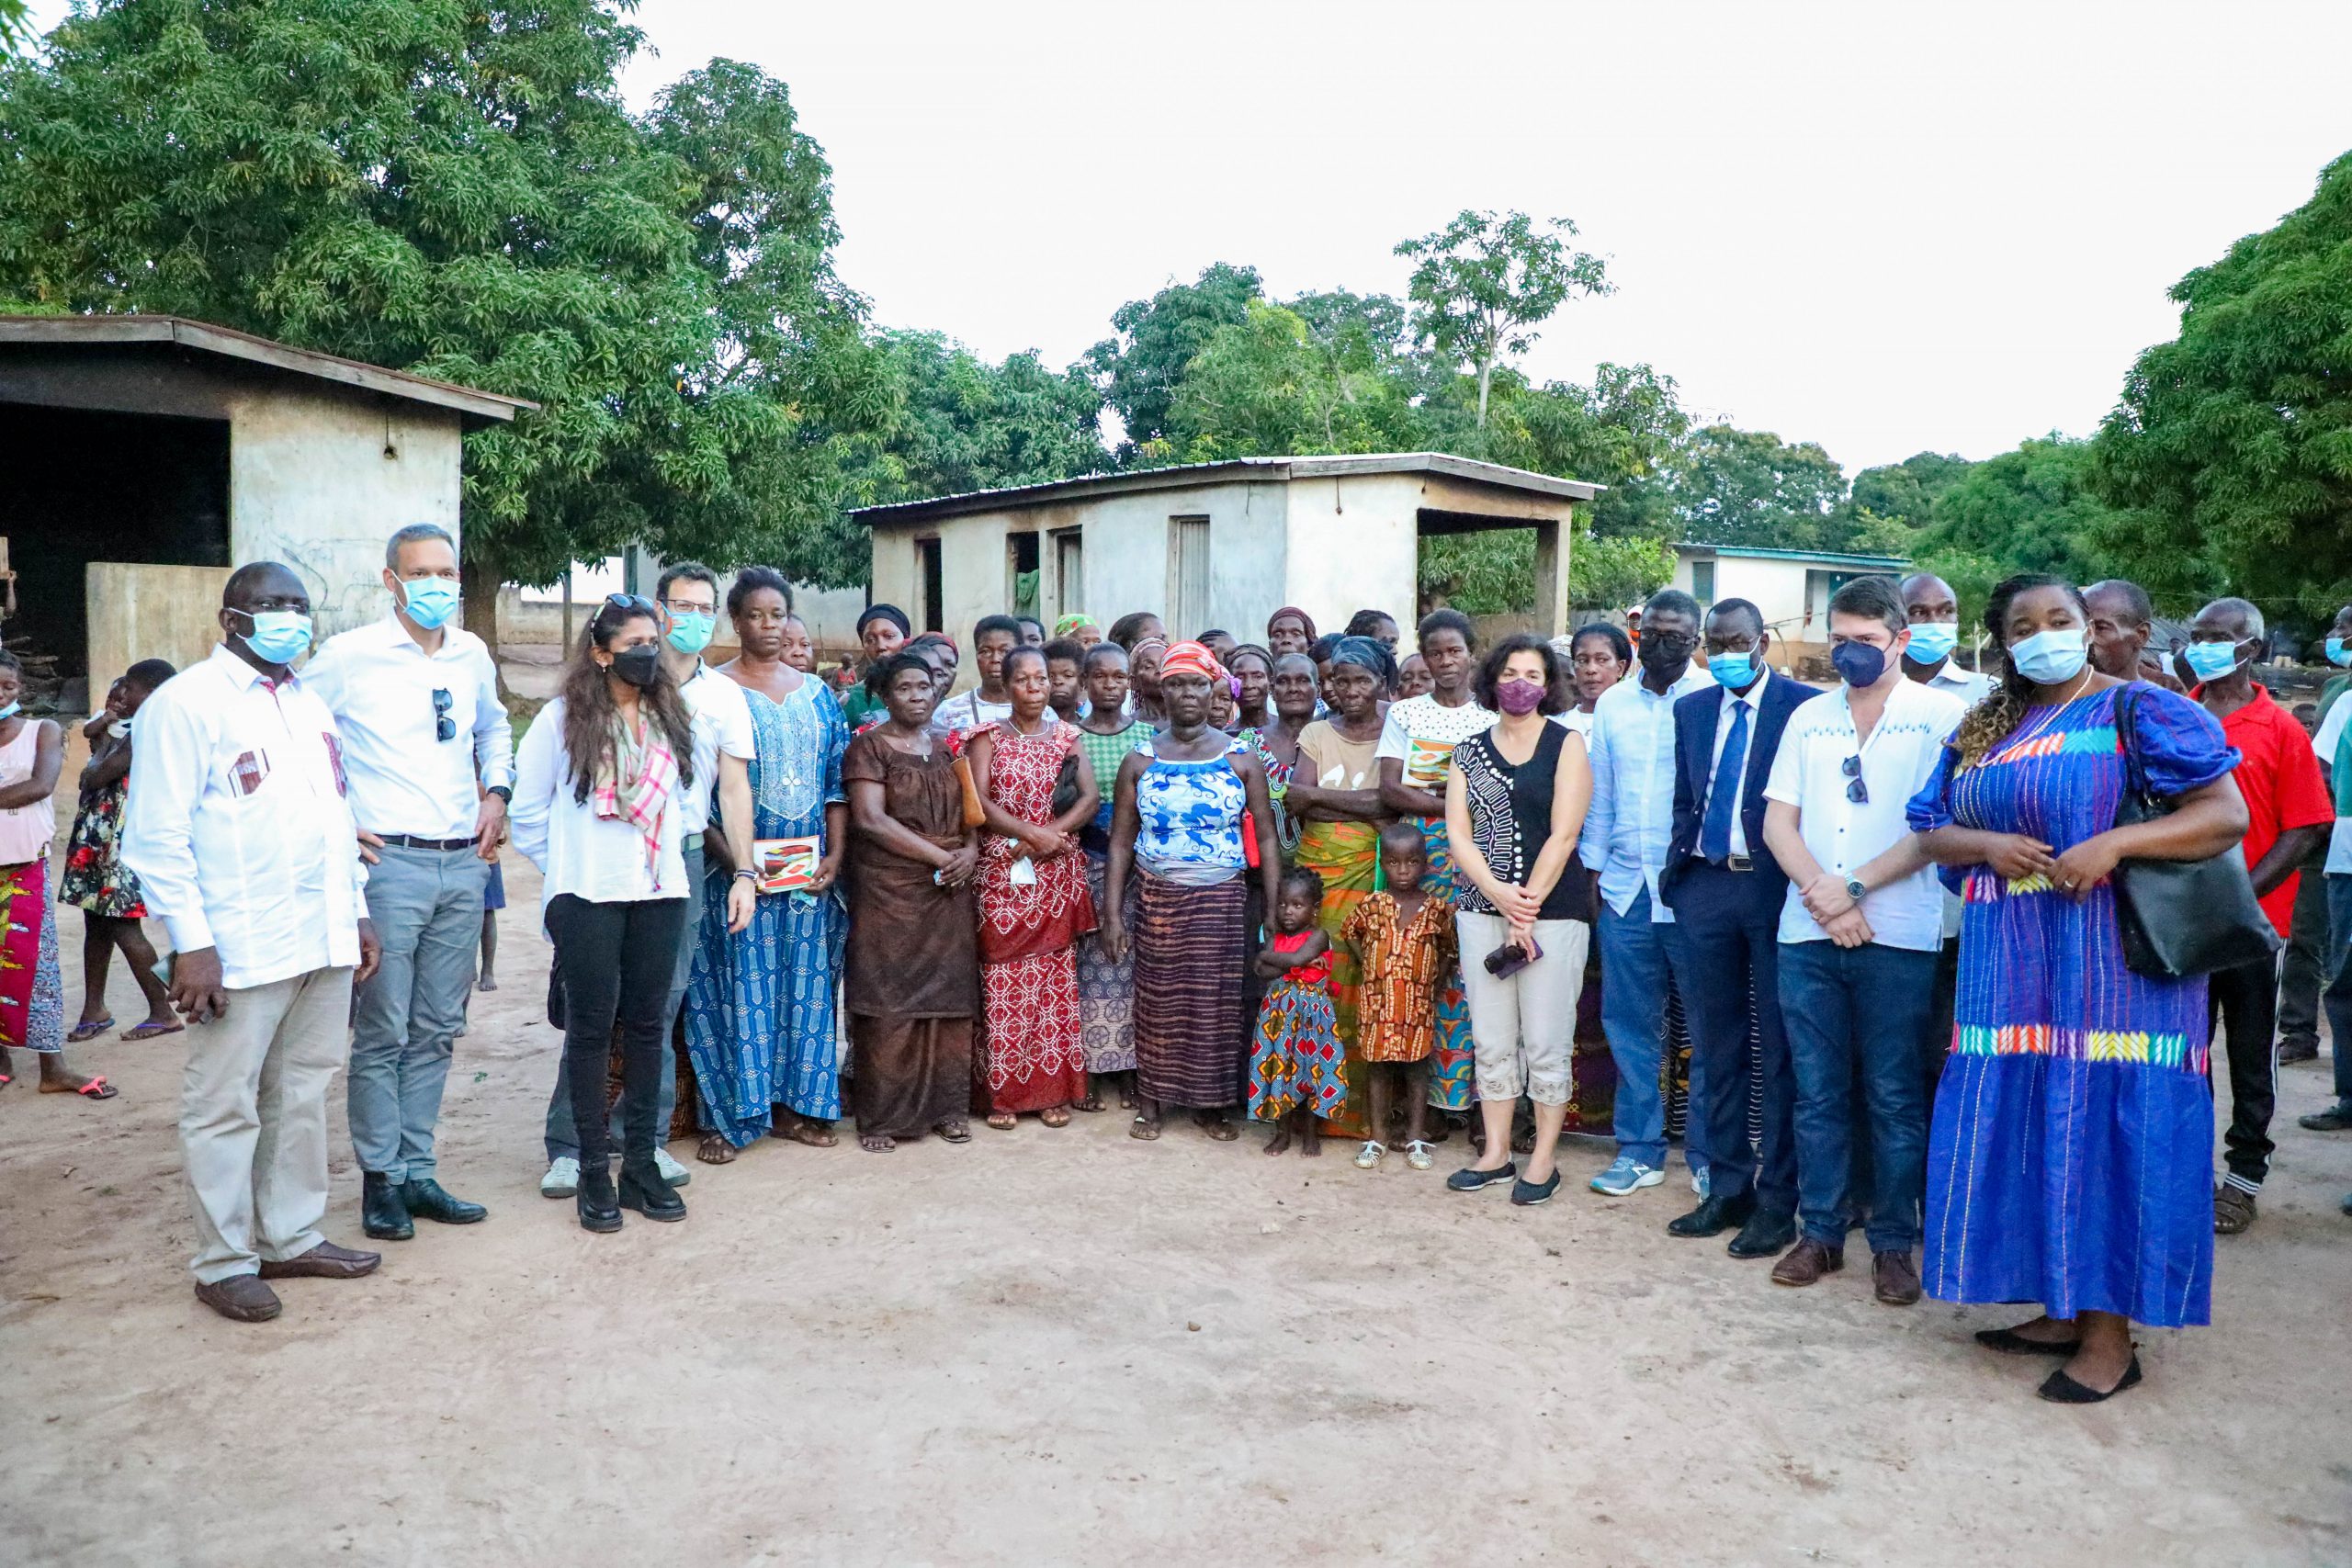 Une délégation de la Banque Mondiale visite les bénéficiaires de N’zéré dans la région du Bélier